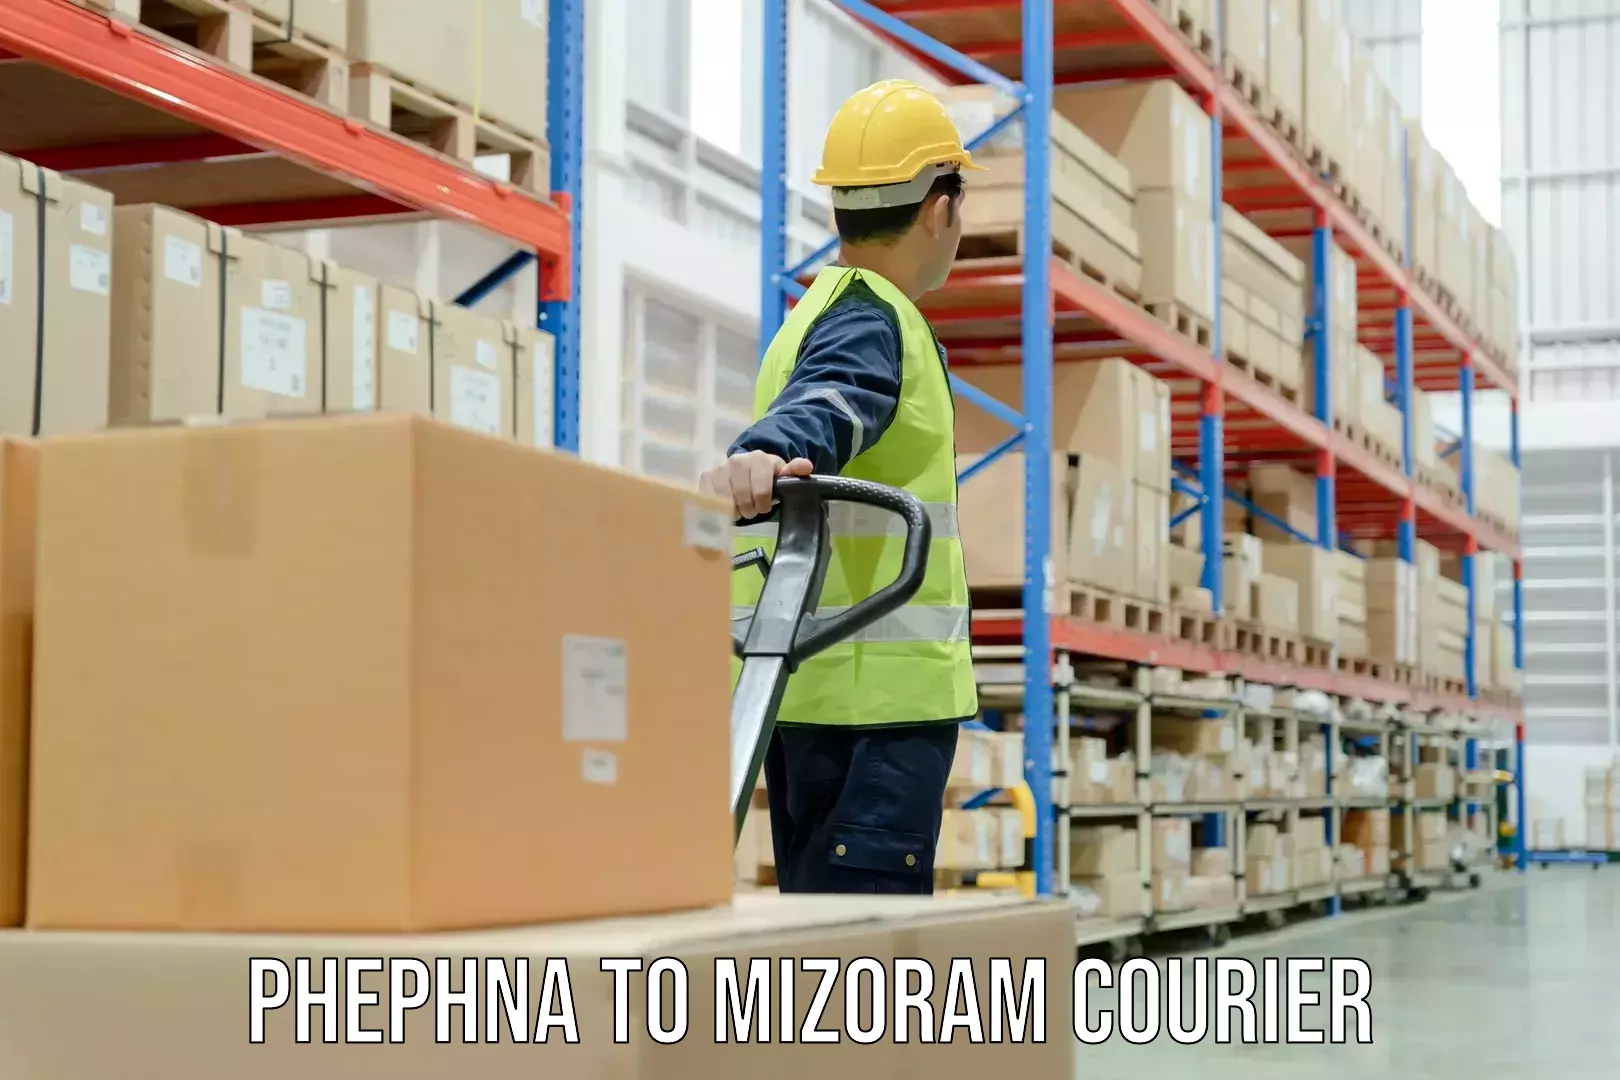 Cost-effective courier options Phephna to Mizoram